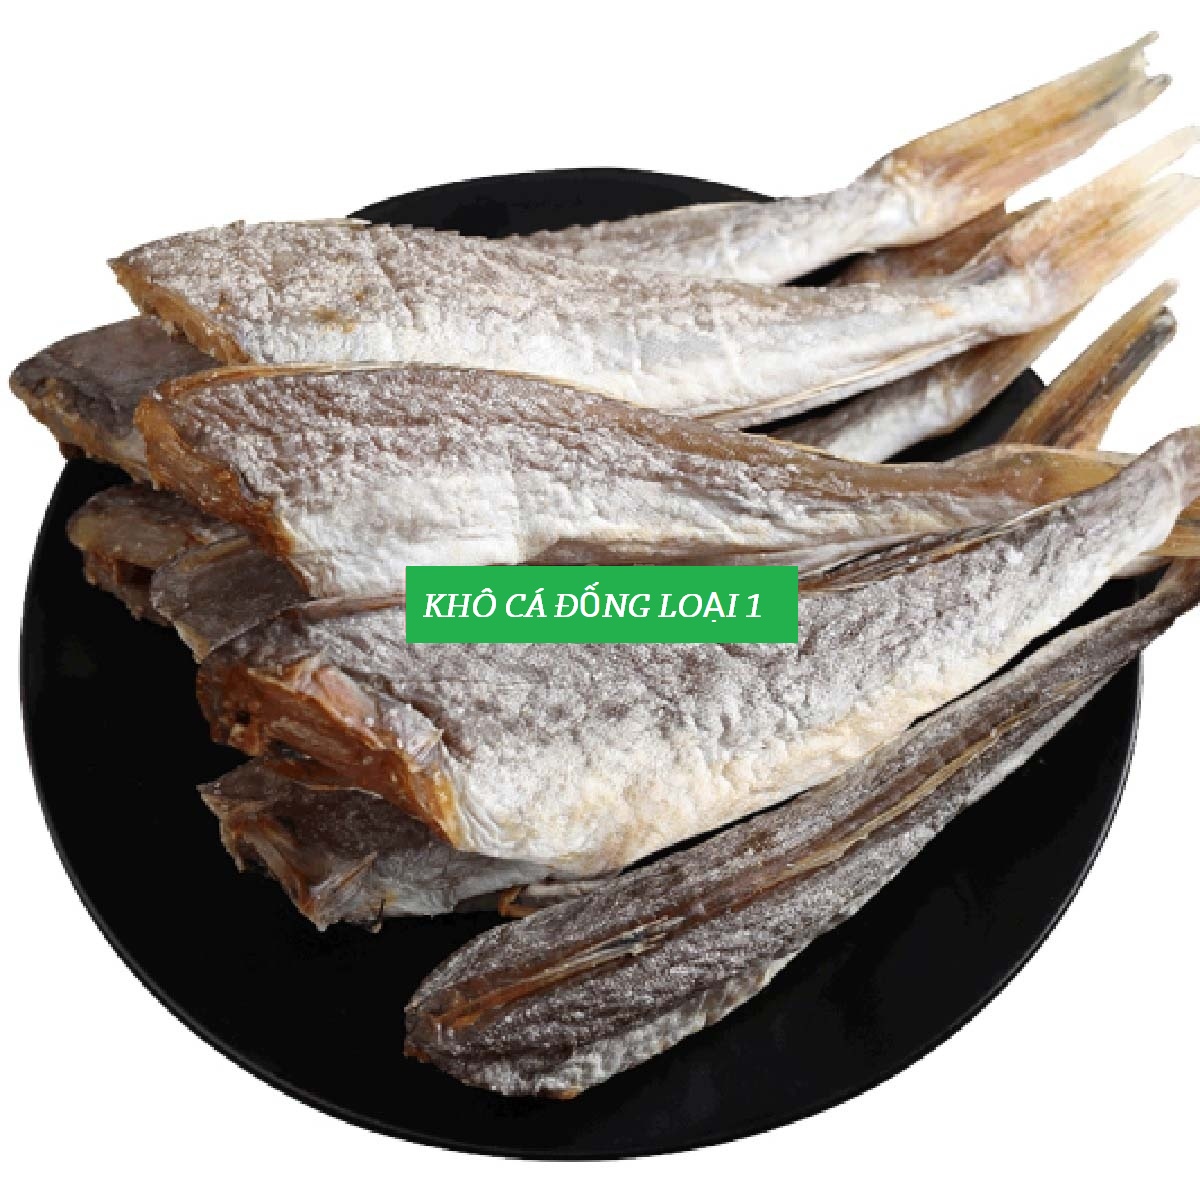 1kg Khô cá đổng cá hường hàng ngon, chất lượng 250gr 500gr CÁ ĐỔNG KHÔNG